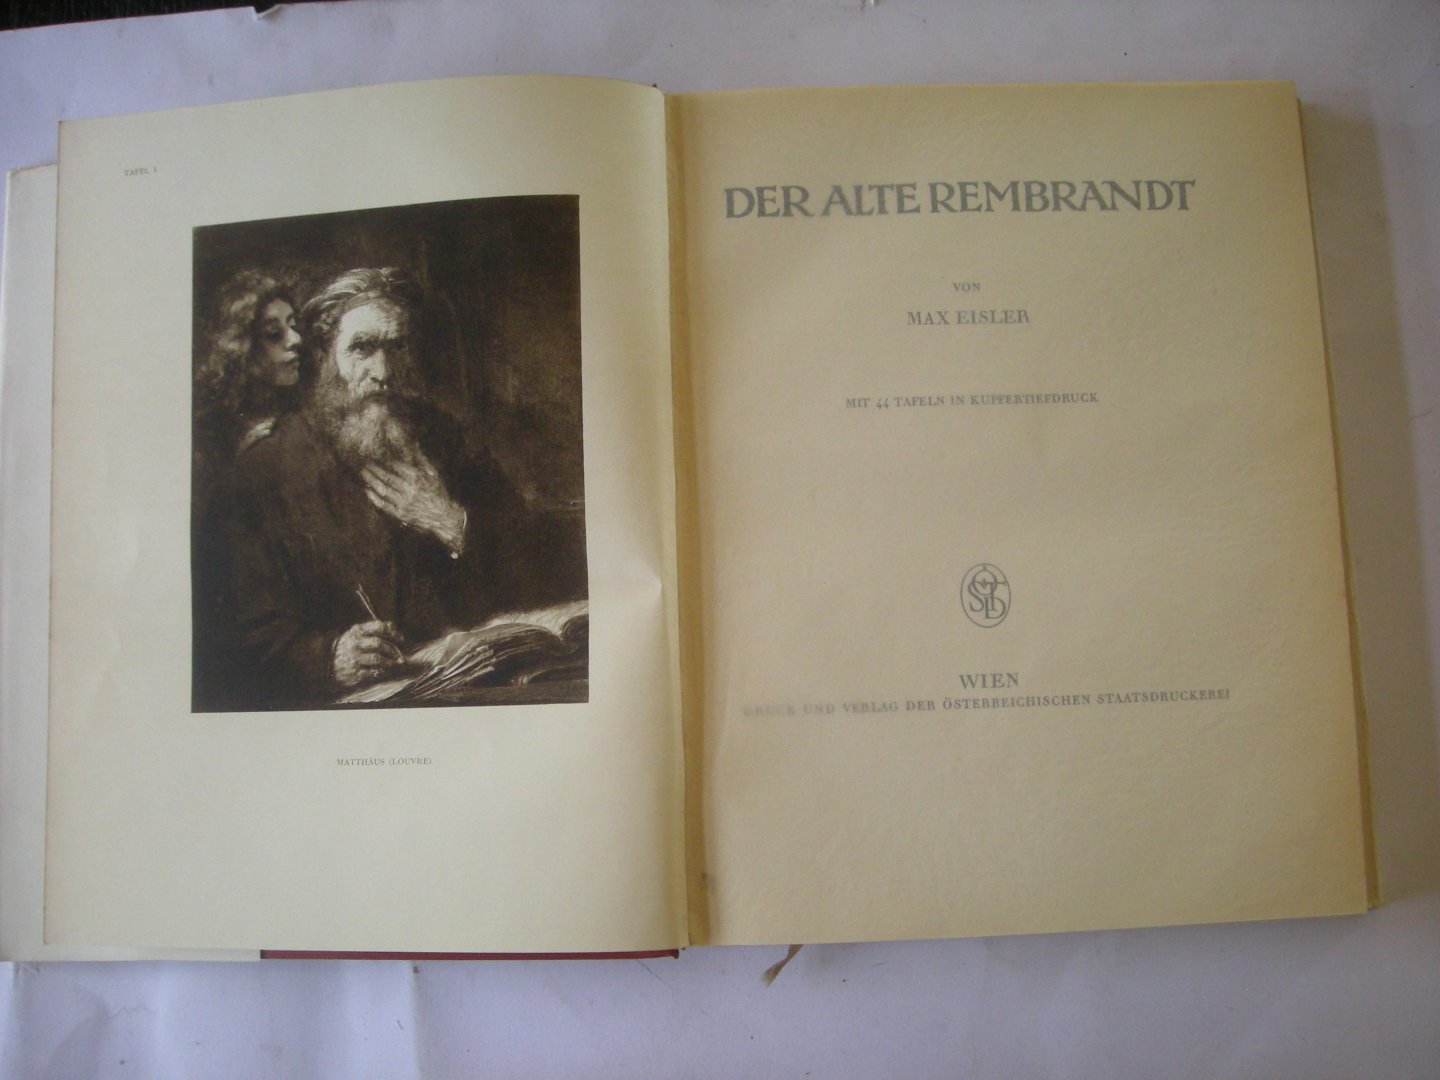 Eisler, Max - Der alte Rembrandt. Mit 44 Tafeln in Kupfertiefdruck